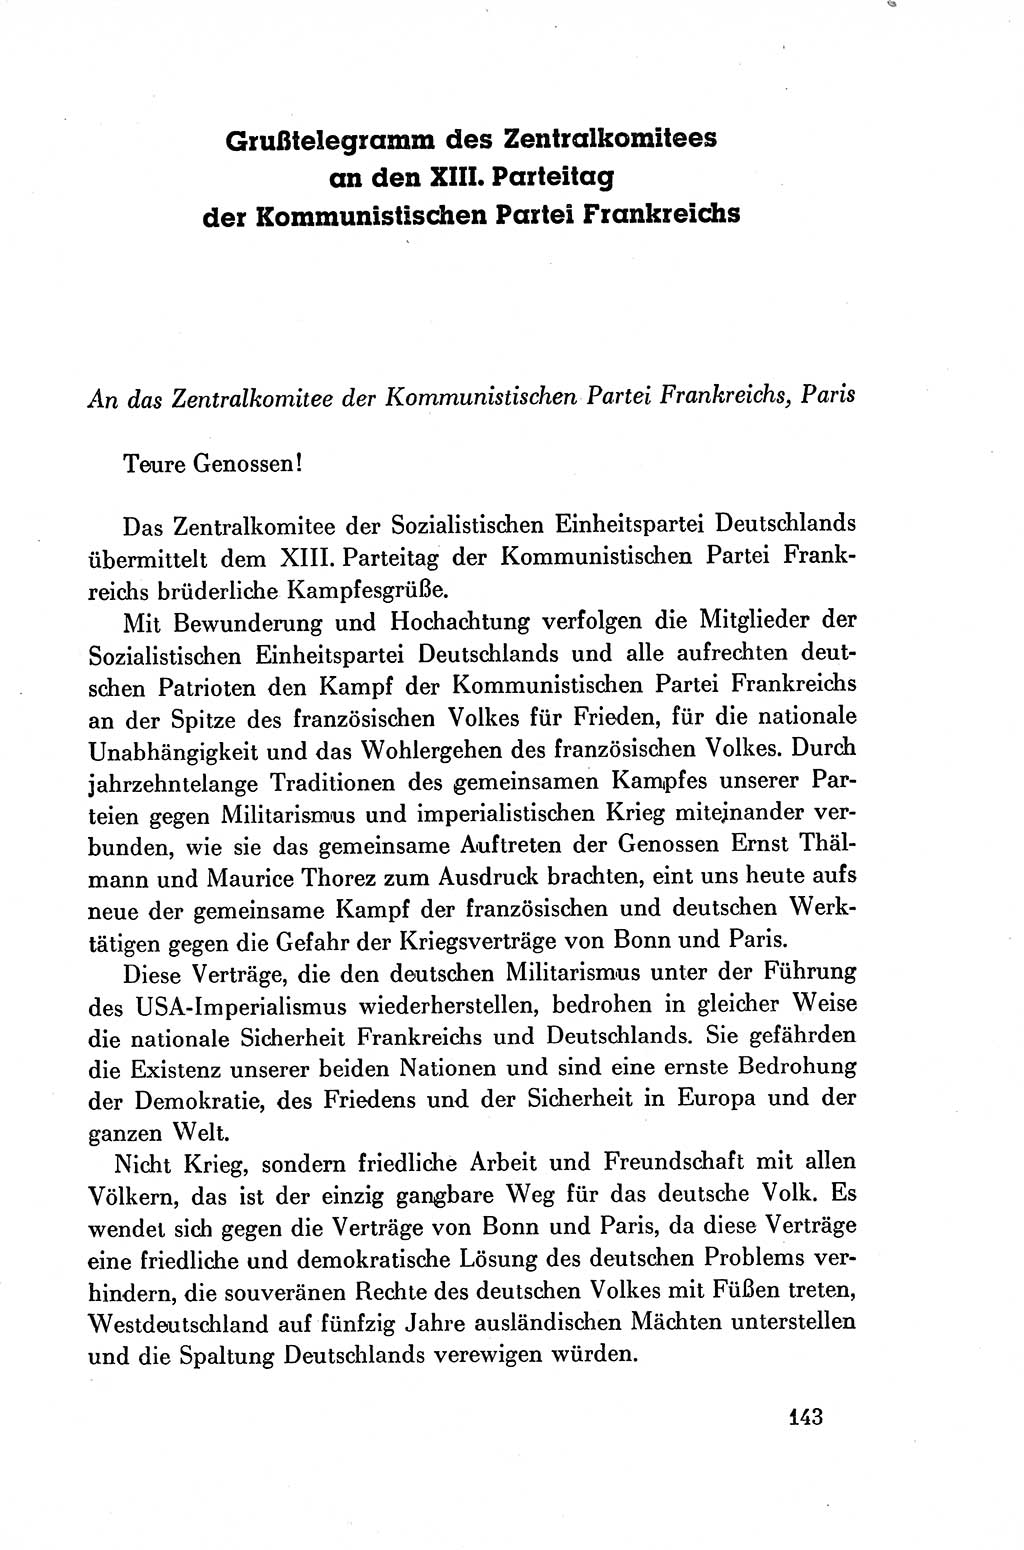 Dokumente der Sozialistischen Einheitspartei Deutschlands (SED) [Deutsche Demokratische Republik (DDR)] 1954-1955, Seite 143 (Dok. SED DDR 1954-1955, S. 143)